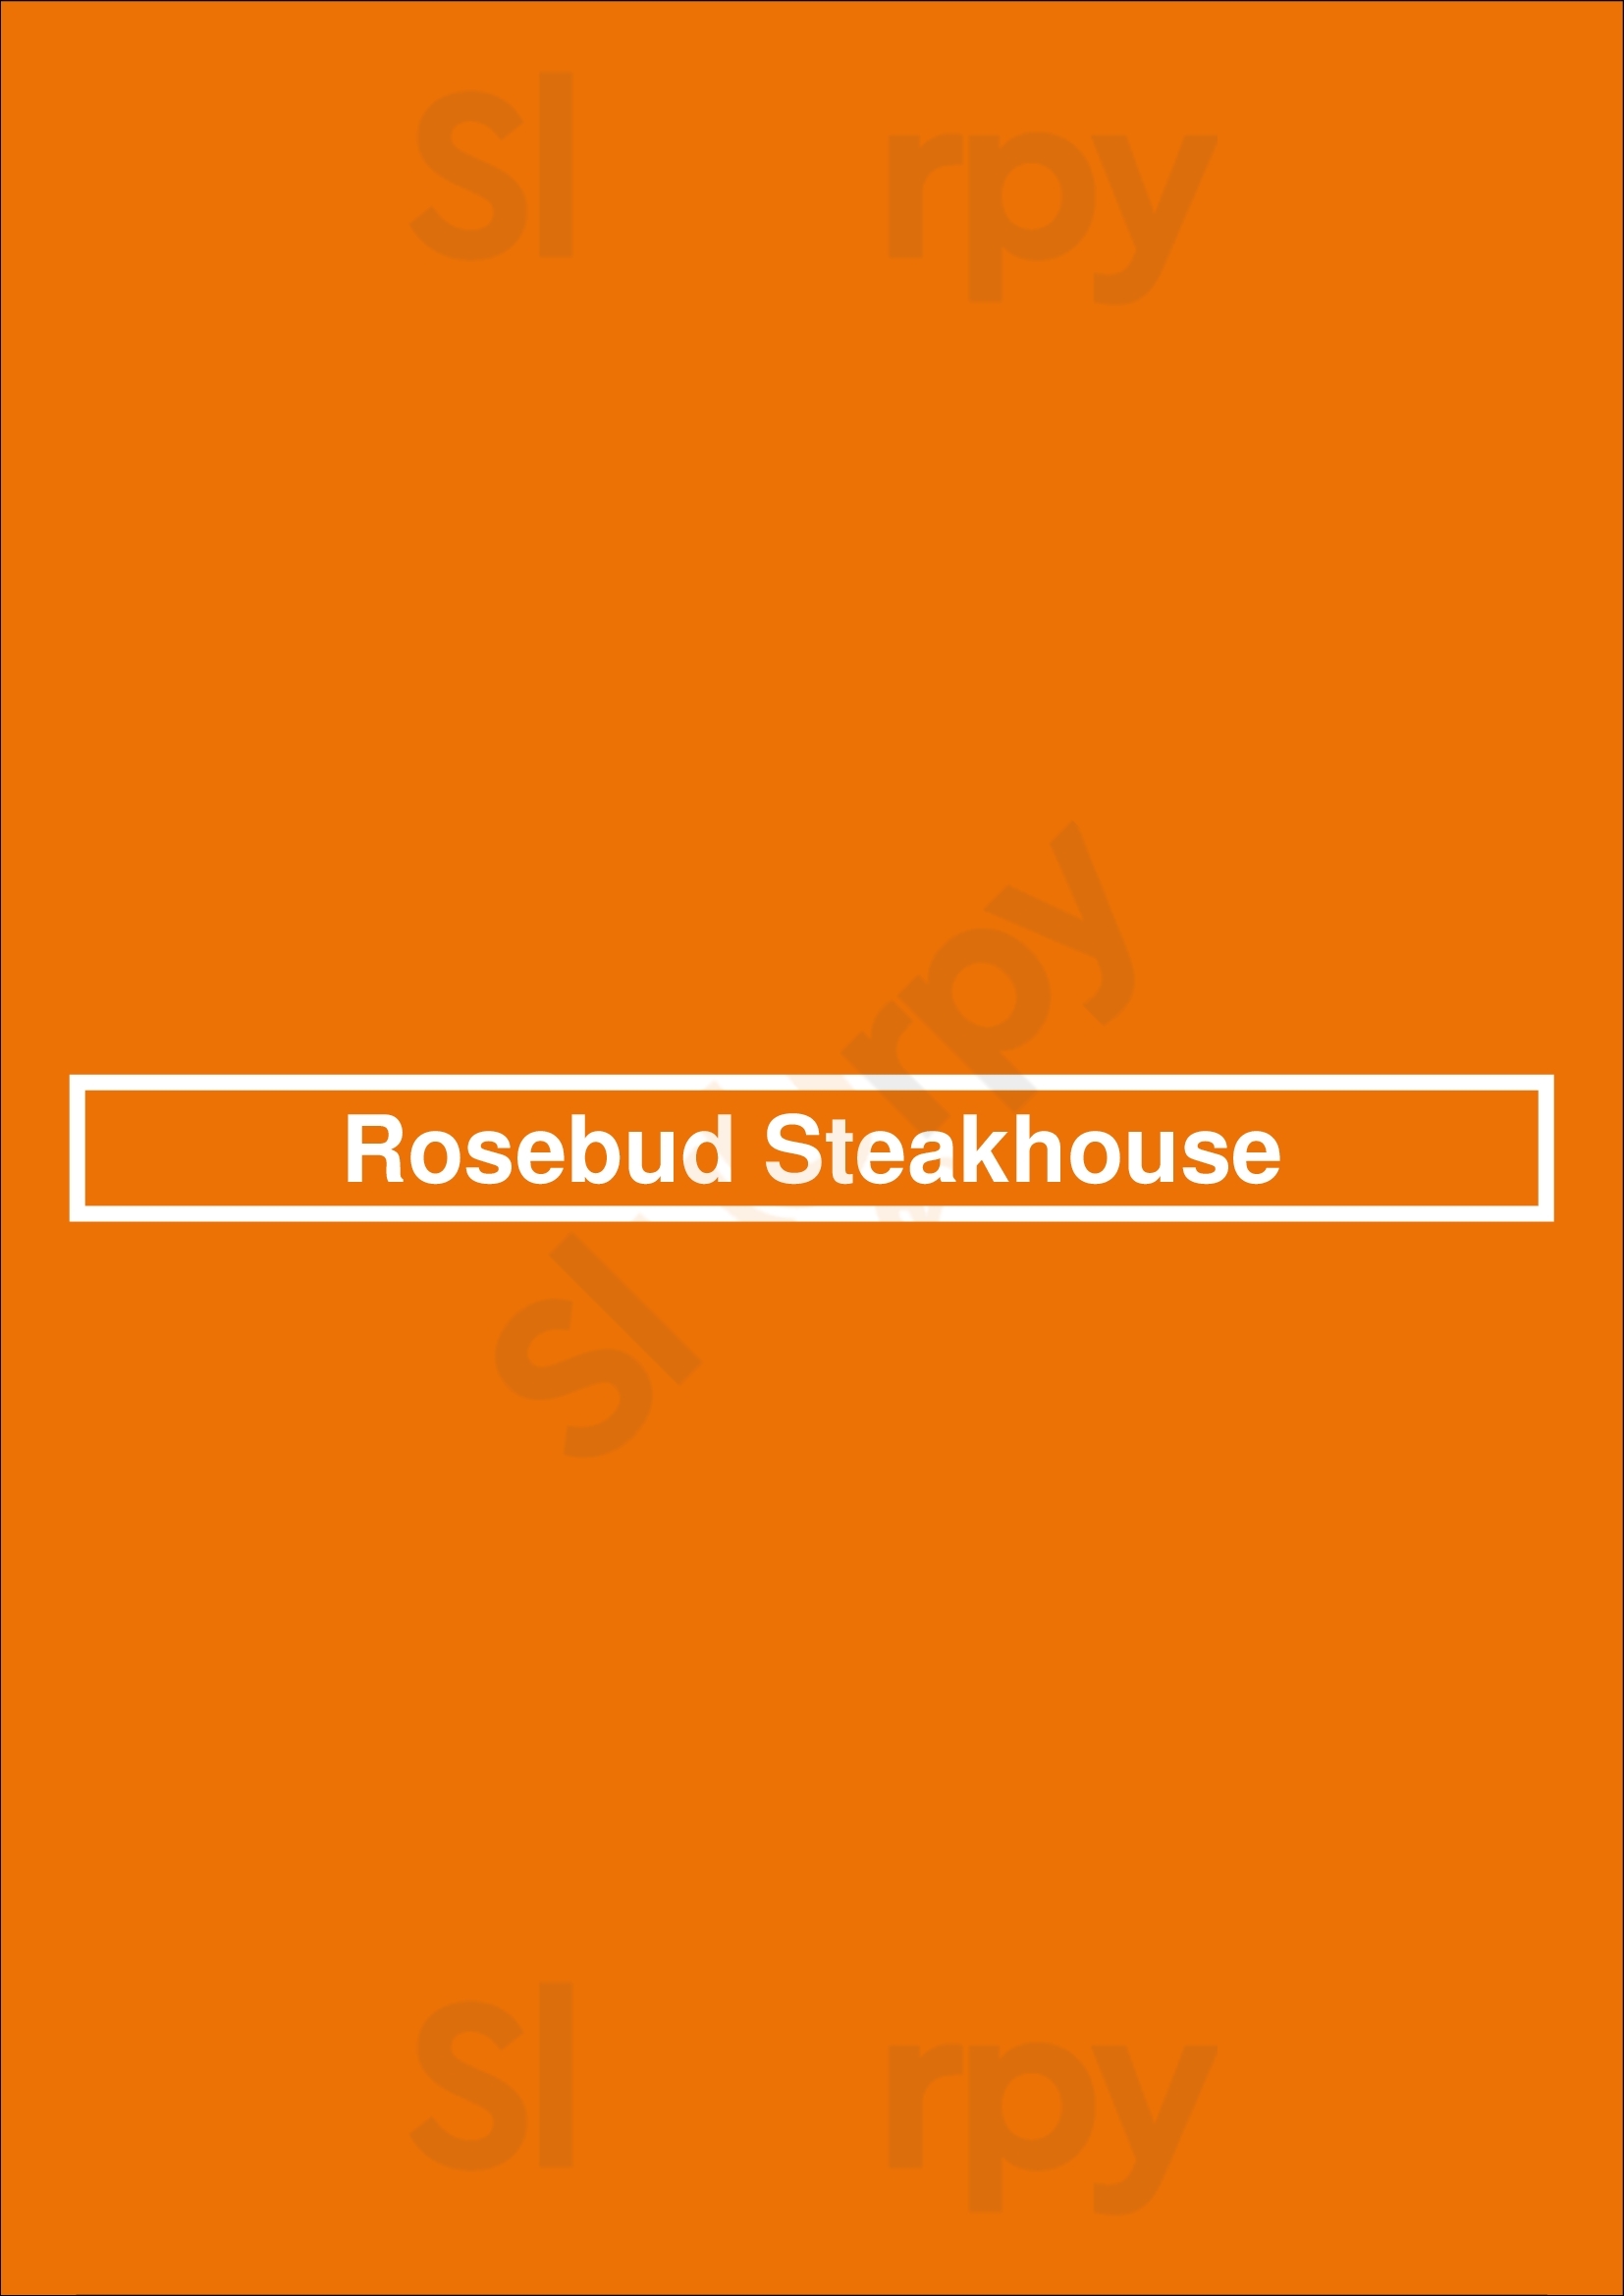 Rosebud Steakhouse - Mag Mile Chicago Menu - 1